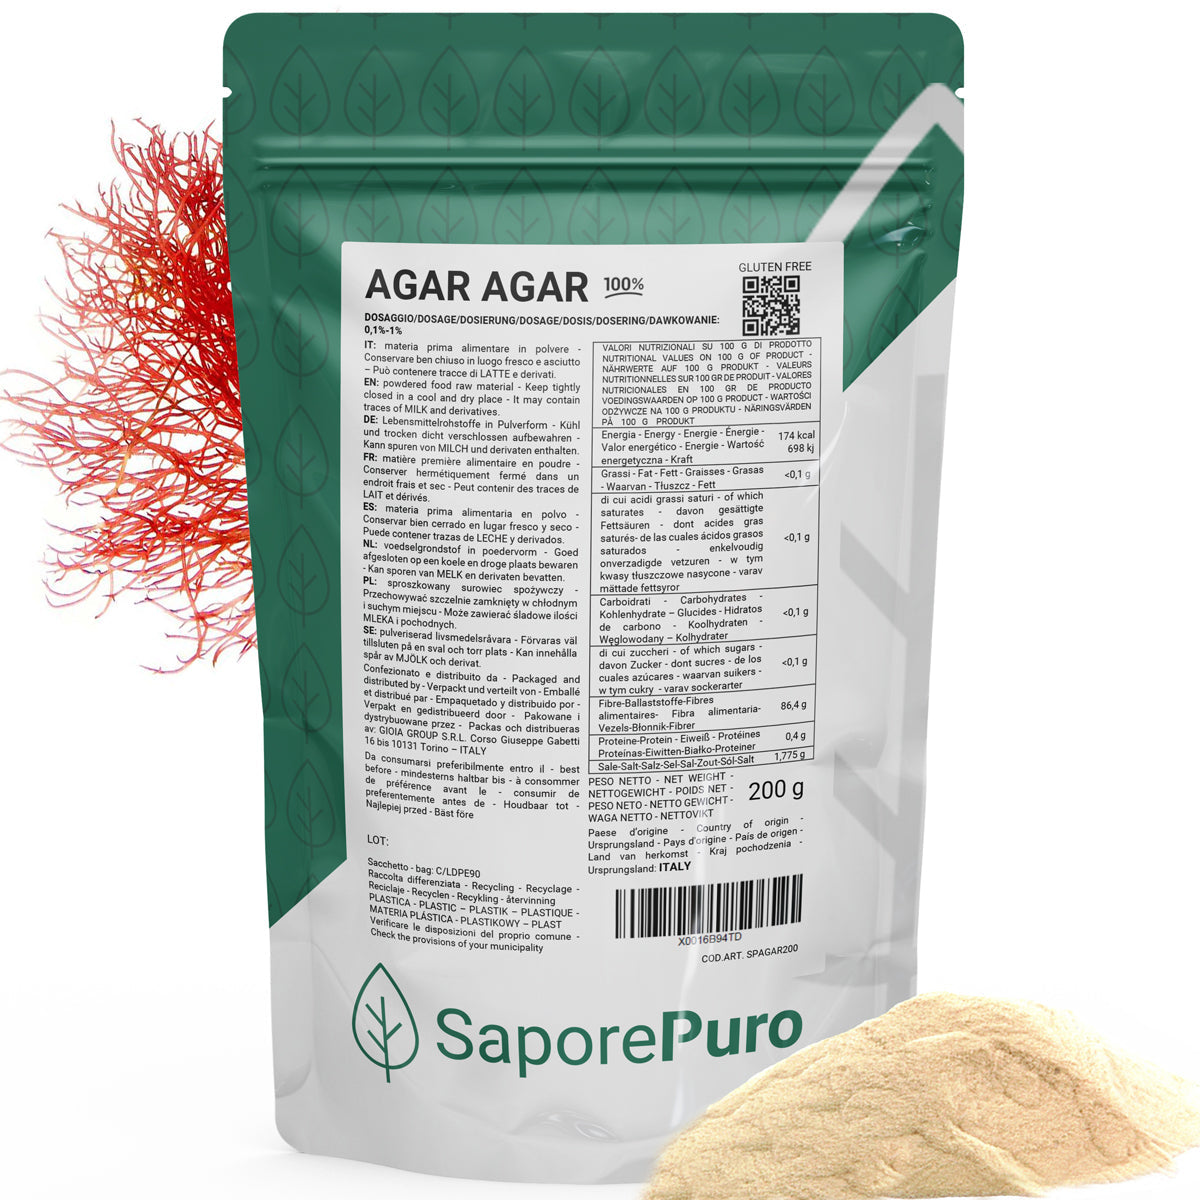 Agar Agar Preattivato - E406 - Origine ITALIA - La migliore scelta nell'applicazione lattiero-casearia - SaporePuro